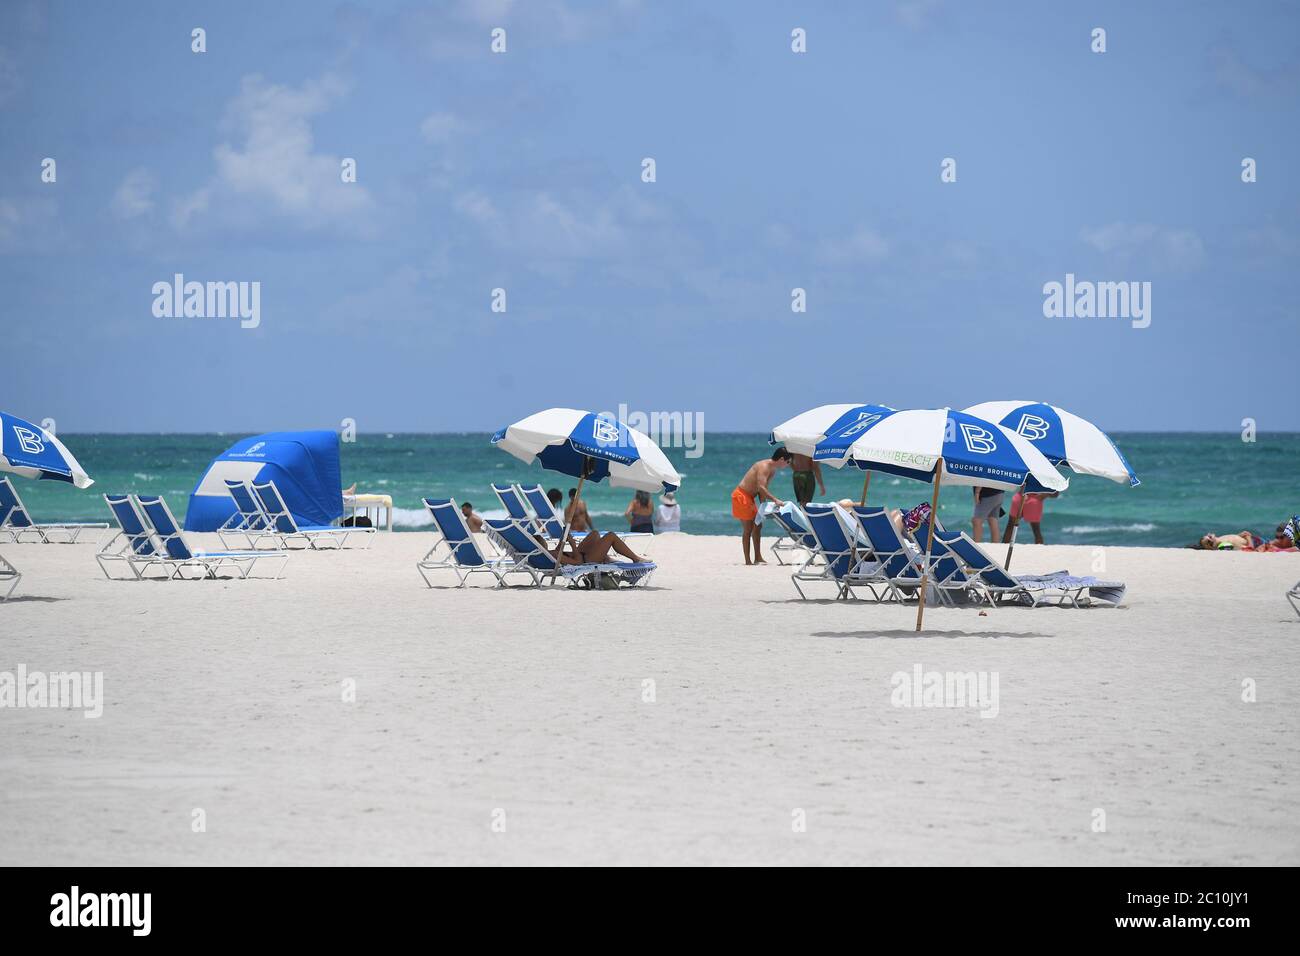 Miami Beach, Floride, États-Unis. 12 juin 2020. Les plages de Miami ont rouvert conformément à la phase un du comté de Dade de Miami, lors de la pandémie du coronavirus COVID-19, le 12 juin 2020 à Miami Beach, en Floride. Crédit : Mpi04/Media Punch/Alay Live News Banque D'Images